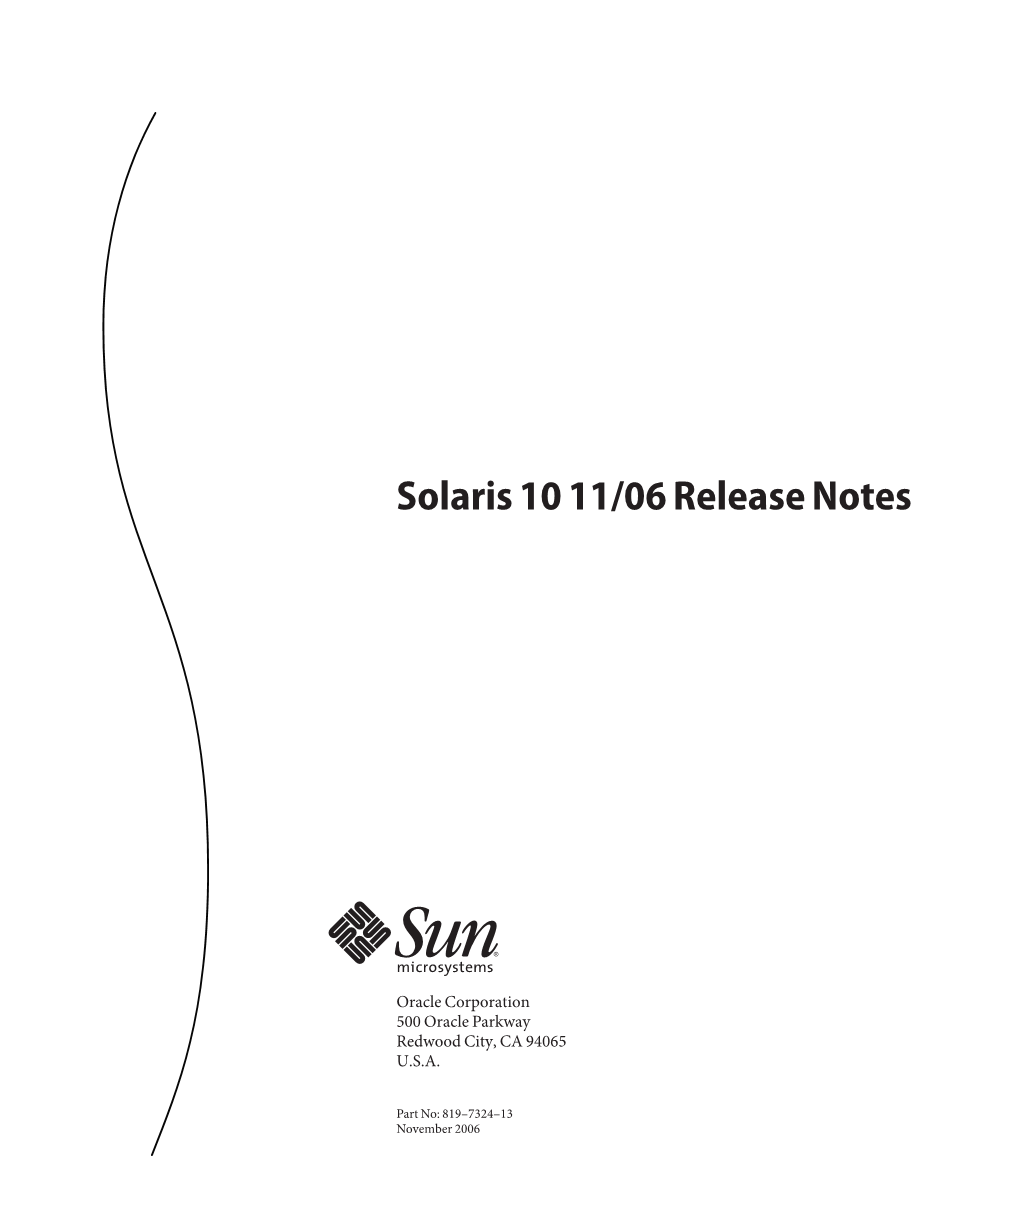 Solaris 10 1106 Release Notes